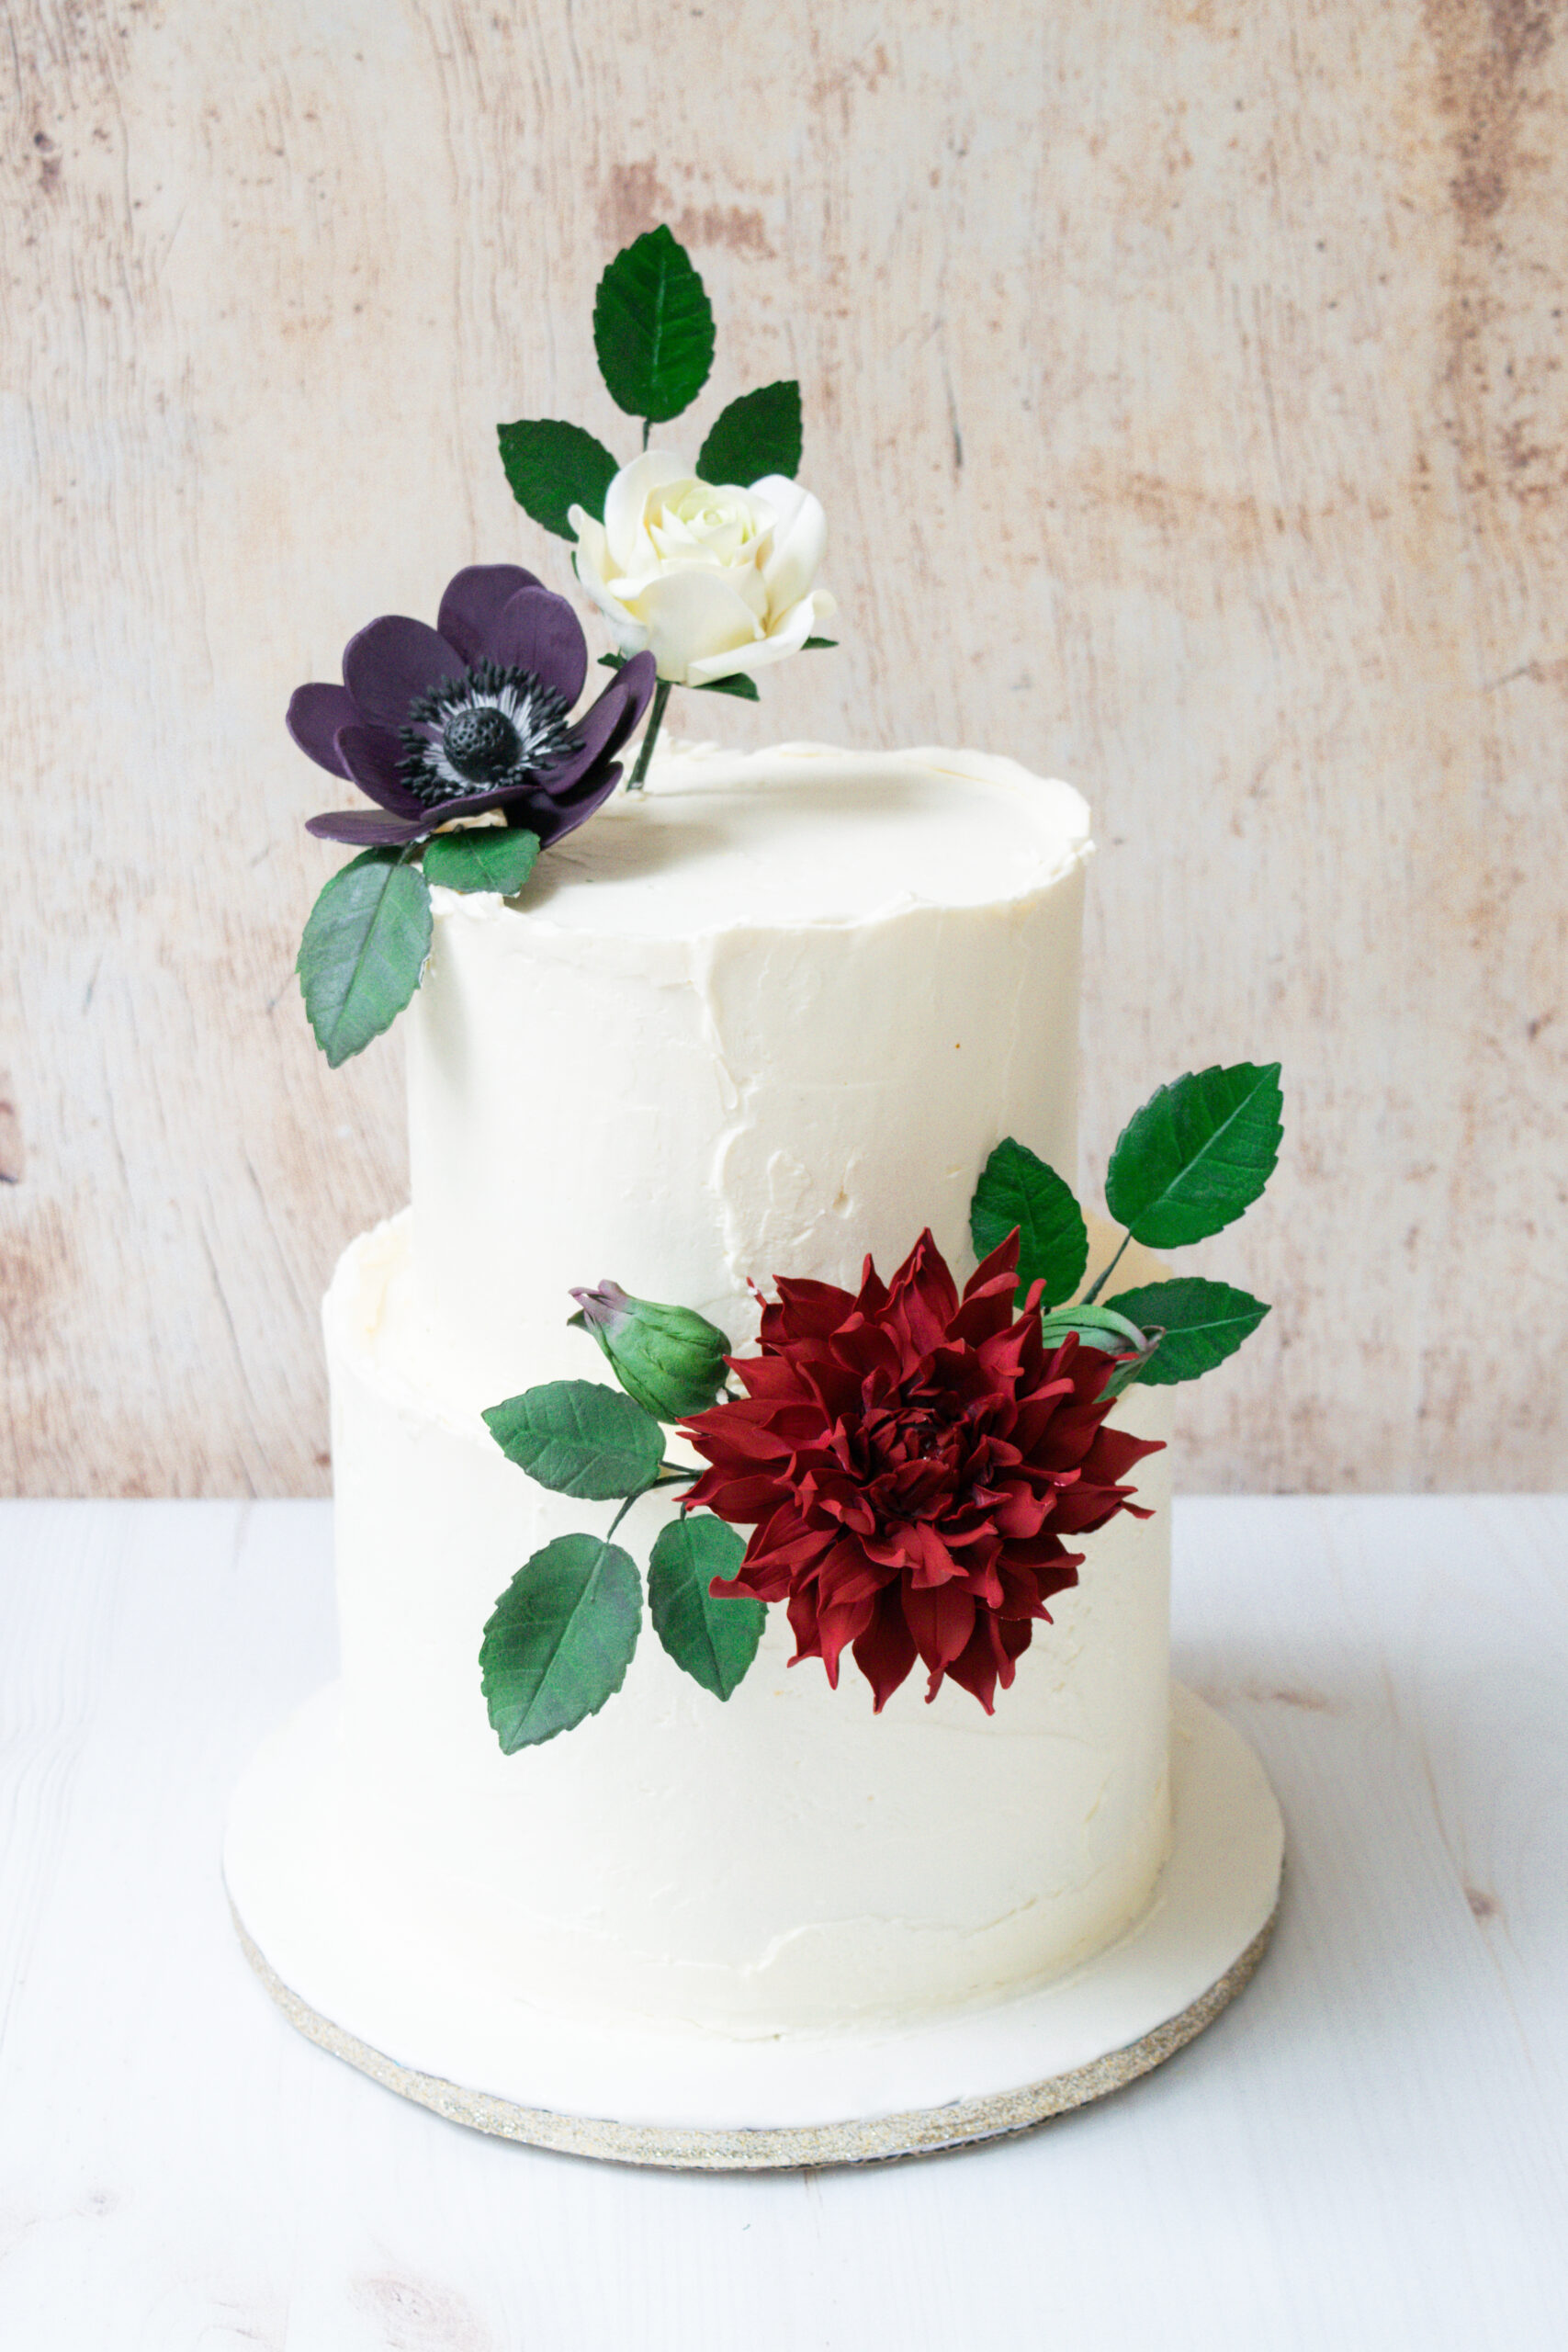 How to Preserve Your Sugar Flowers as a Wedding Keepsake Sugar Flowers by Kelsie Cakes